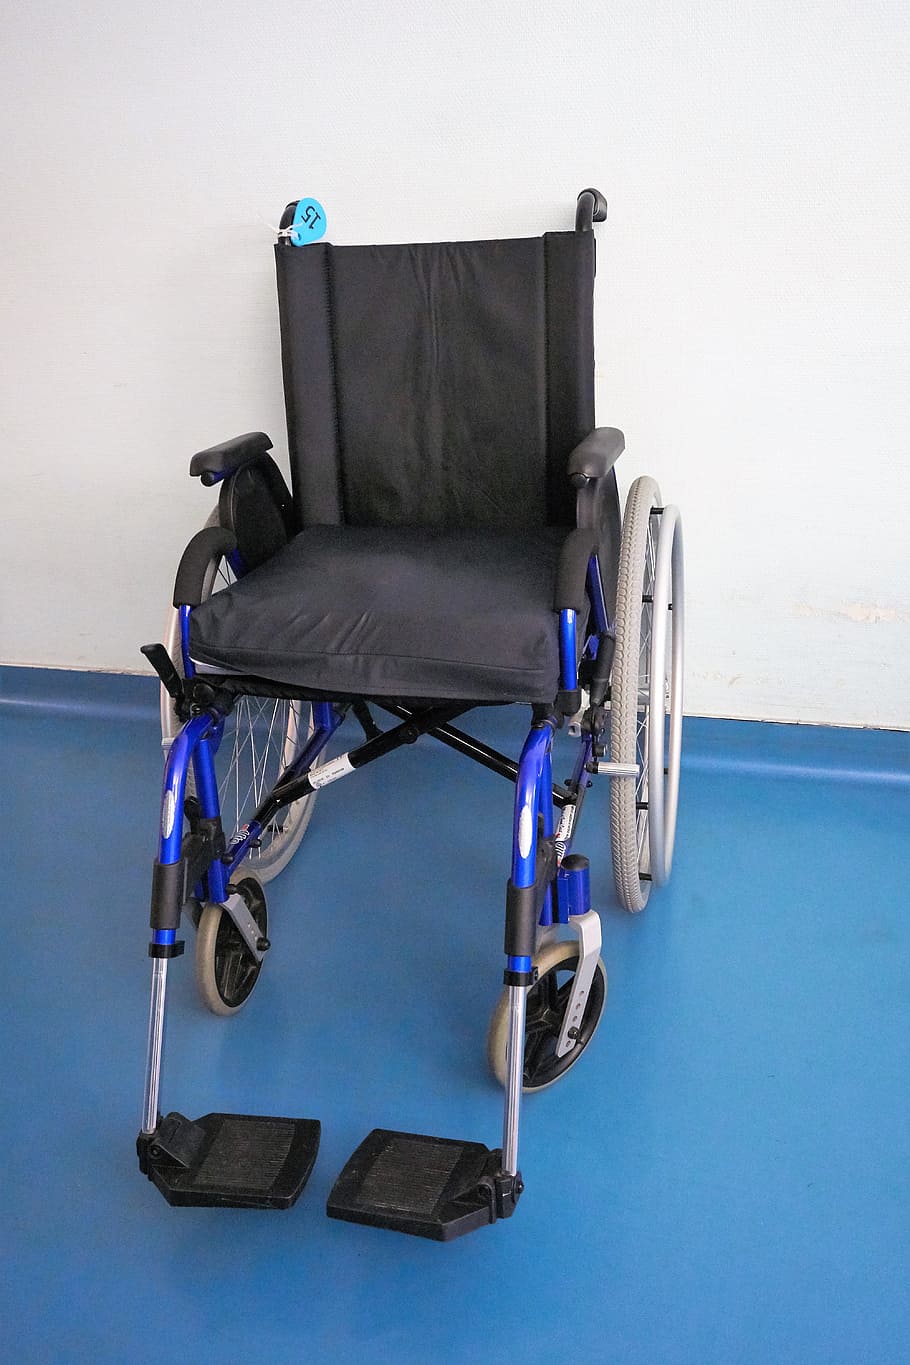 Cadeira de rodas, Medicina, Saúde, mundo médico, transporte, autonomia, deficiência, deficiente, mobilidade reduzida, habilidades diferentes